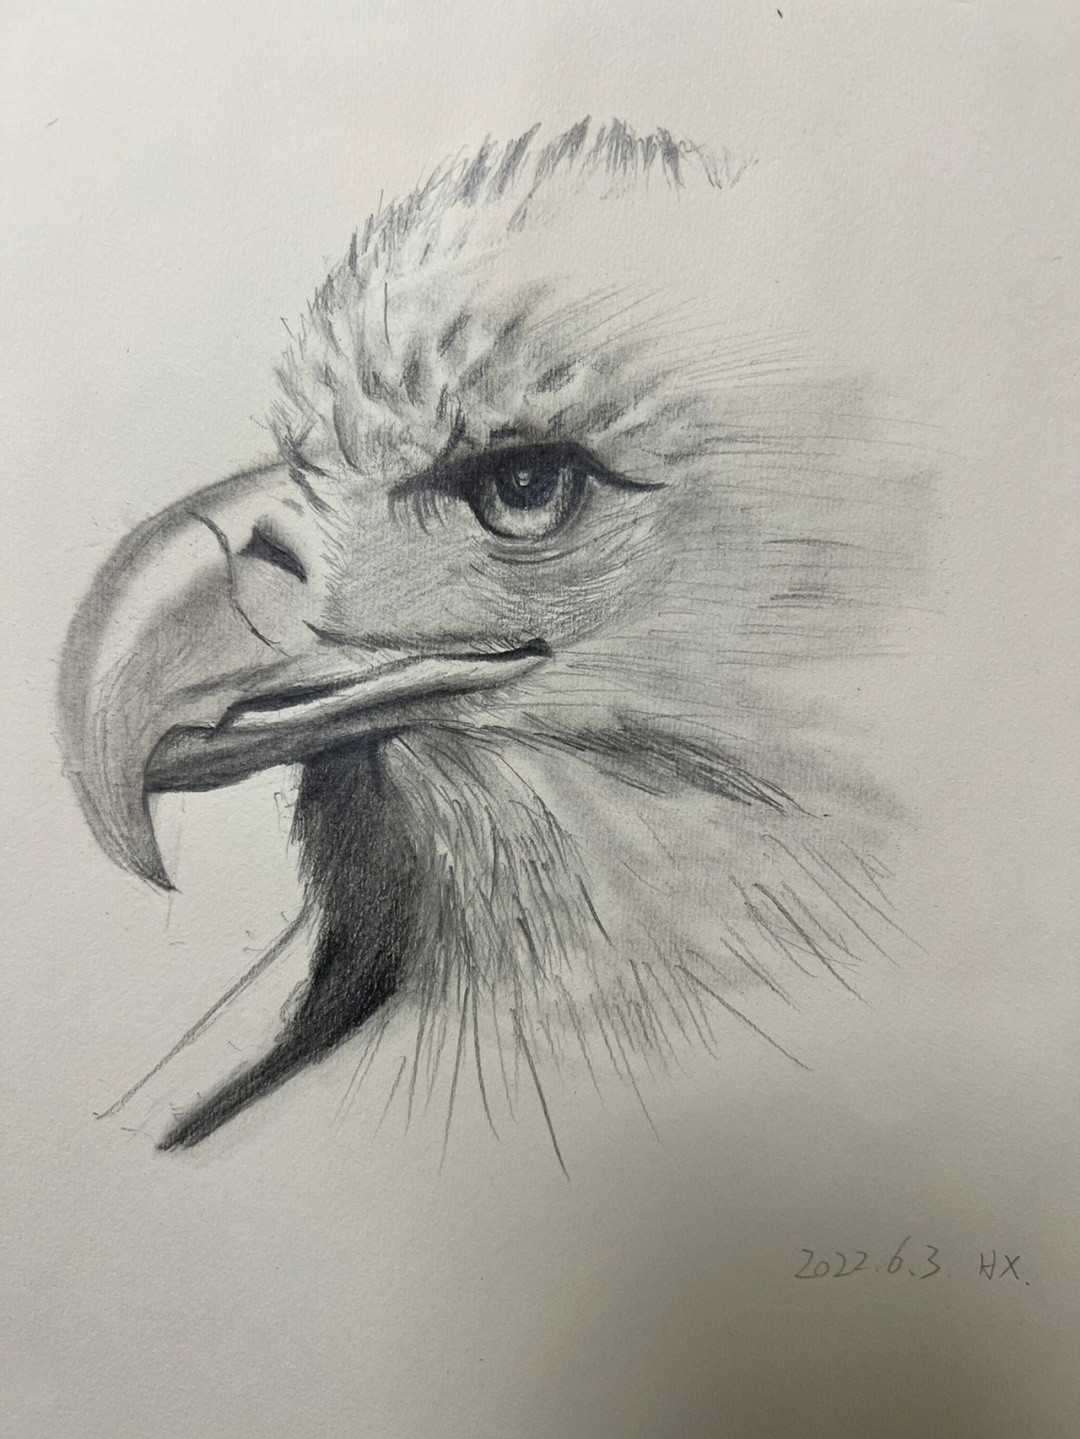 美国白头鹰简单画法图片